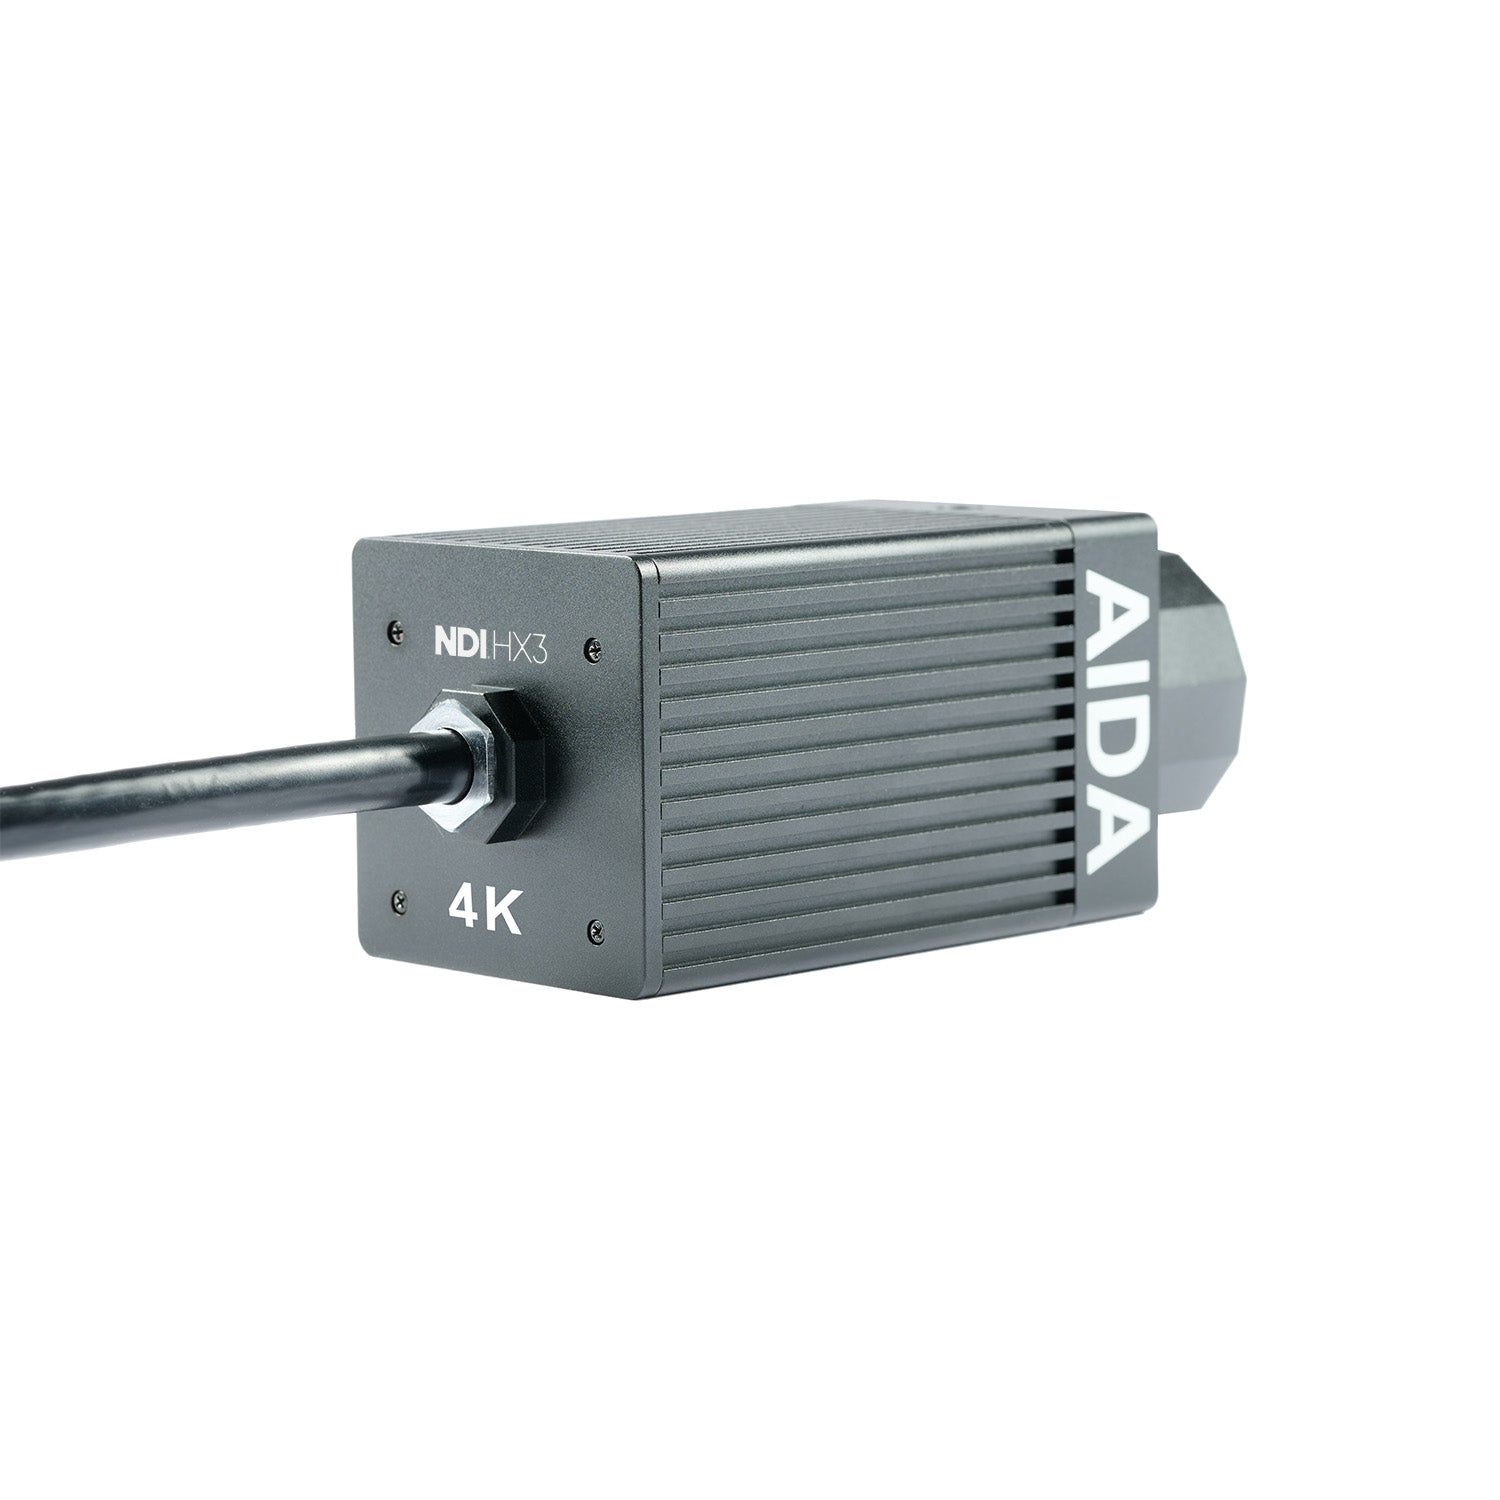 AIDA Imaging UHD-NDI3-IP67 - UHD 4K/60 NDI|HX3 Weatherproof POV Camera, rear right